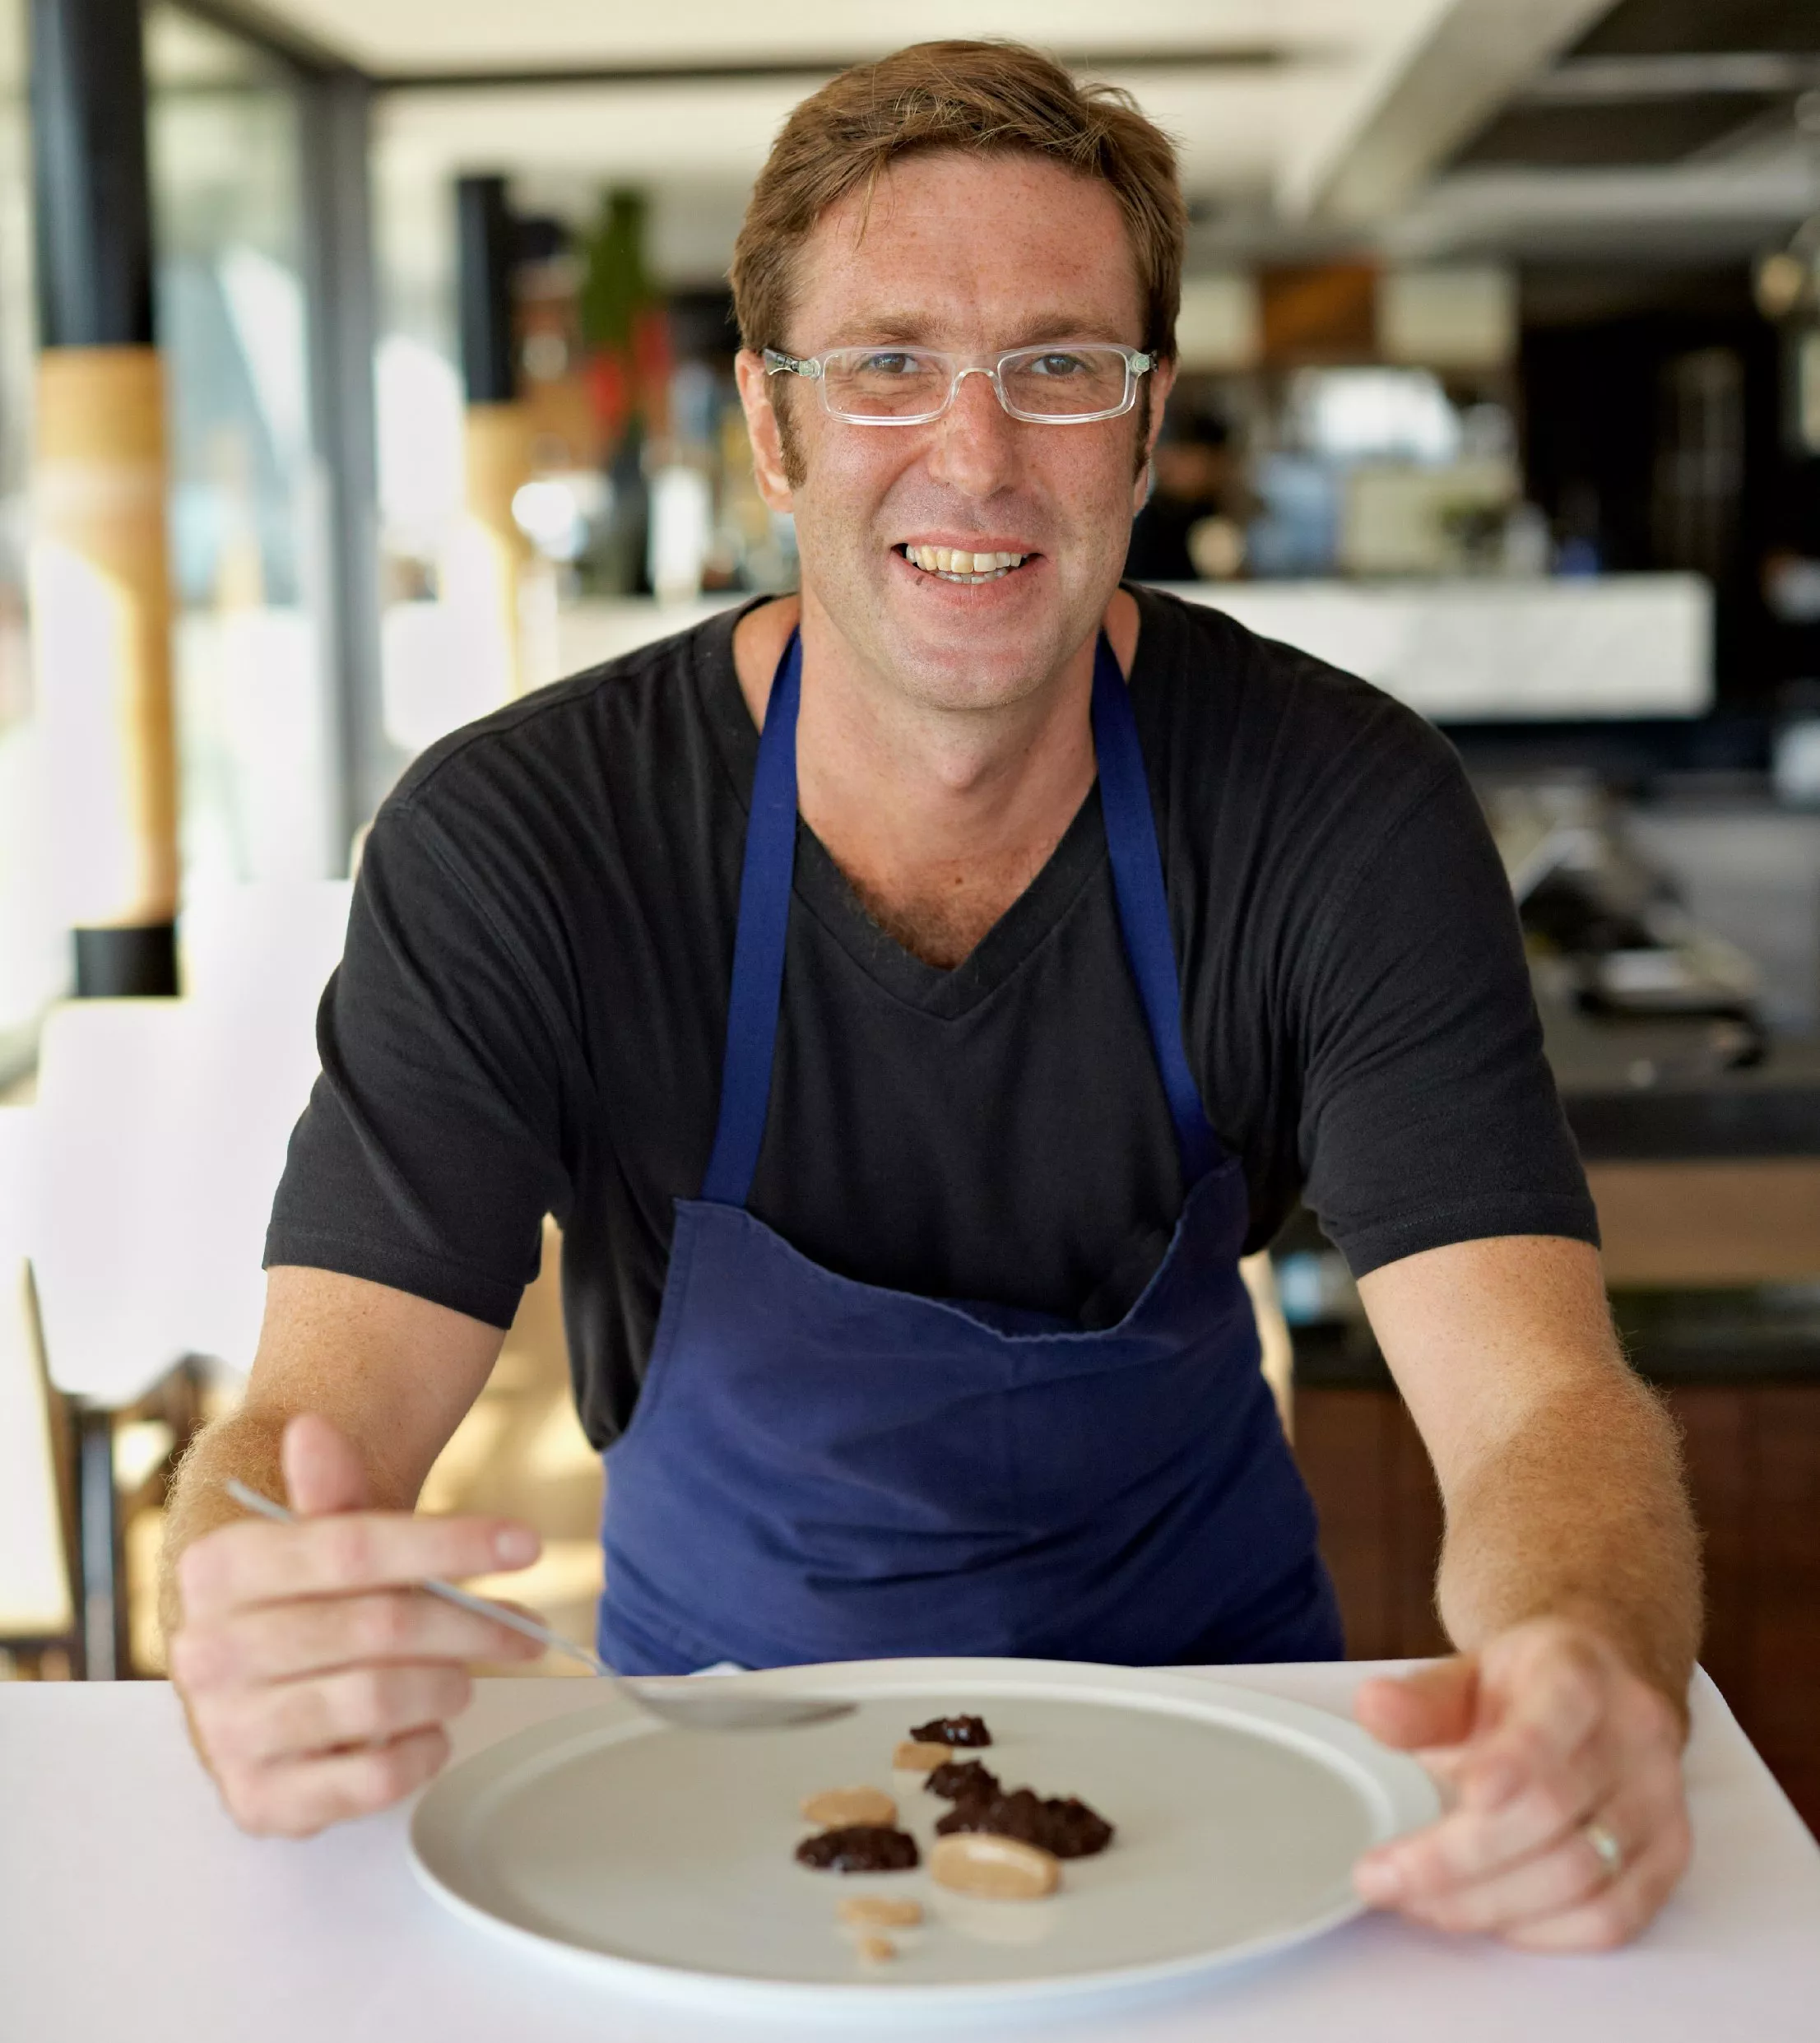 أفضل 8 مطاعم من حول العالم يديرها طهاة شاركوا في برنامج Chefs Table